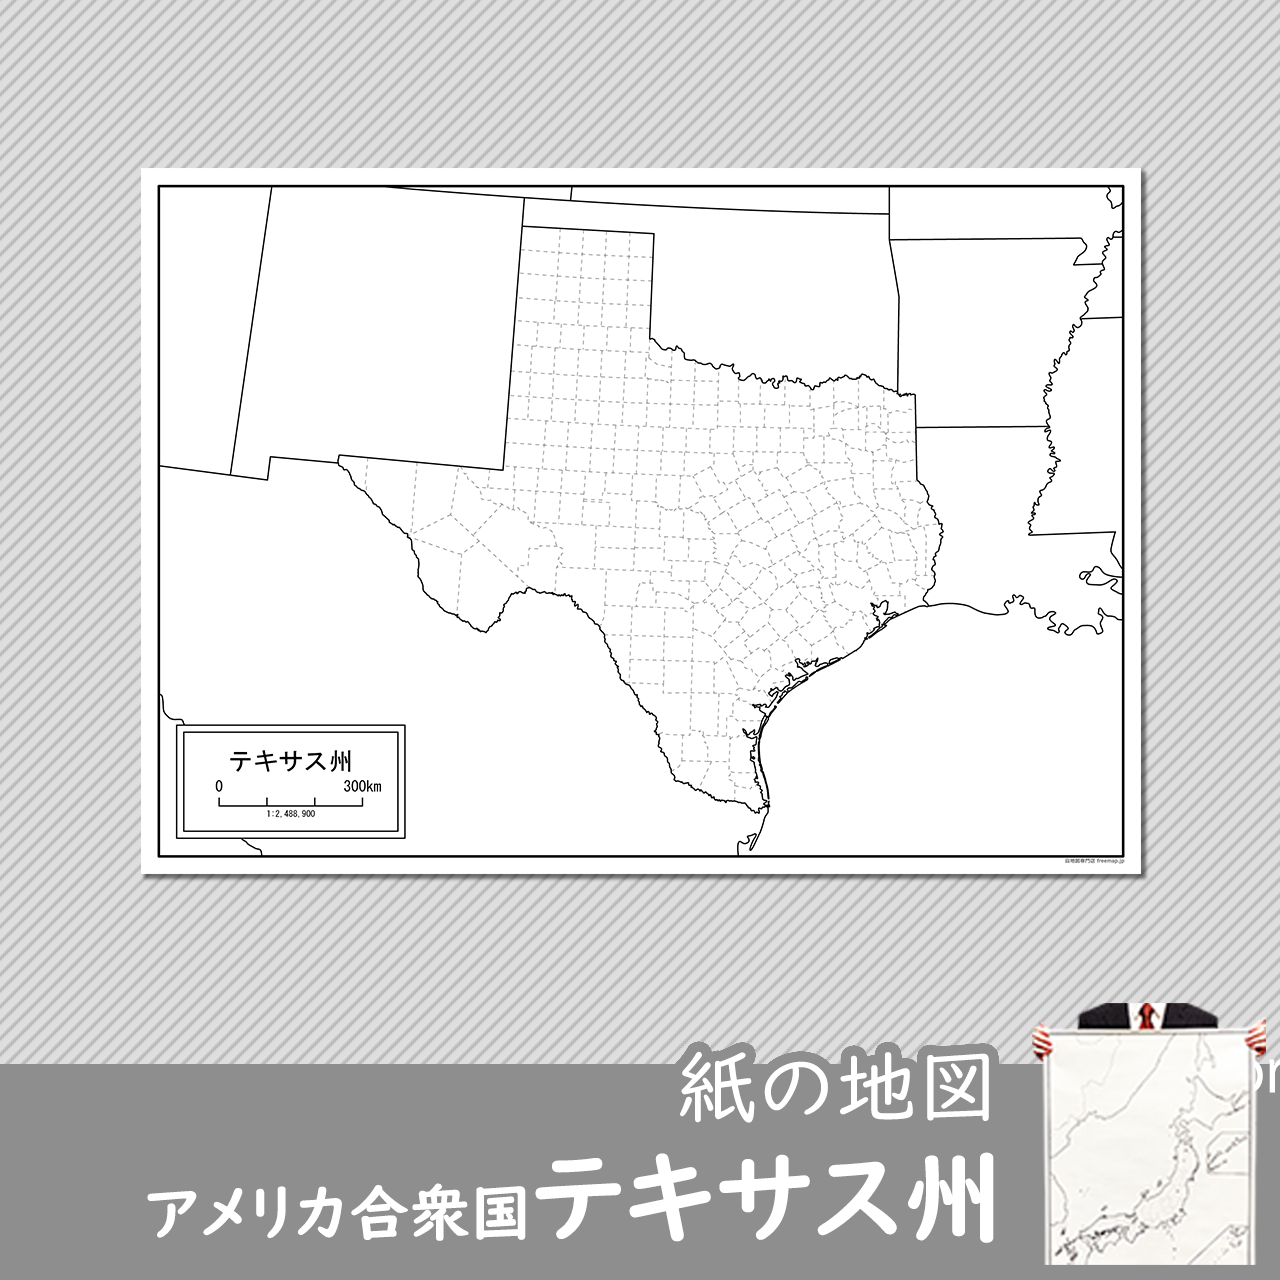 テキサス州の紙の白地図のサムネイル